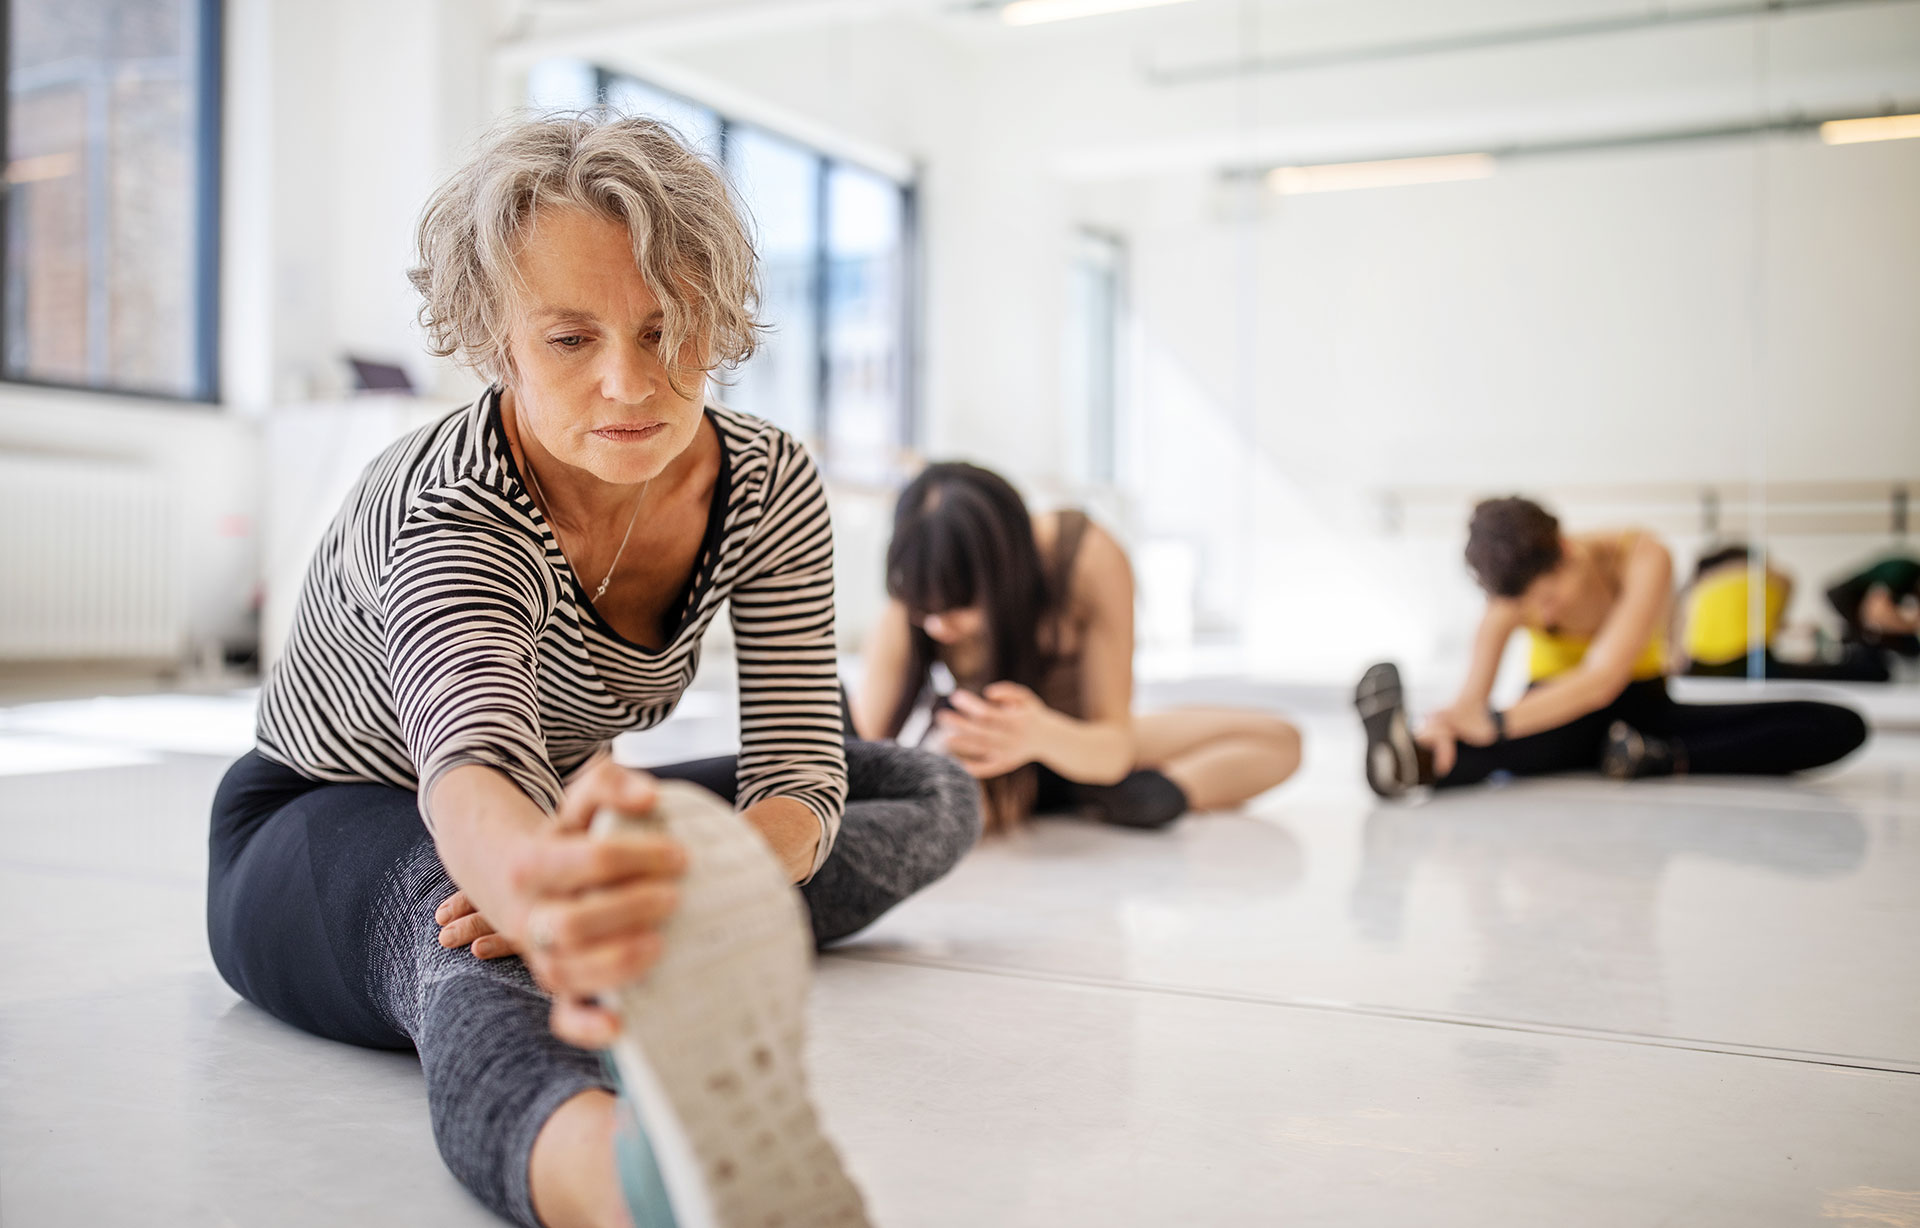 El estiramiento promueve la flexibilidad y ayuda a las articulaciones a mantener un rango de movimiento saludable (Getty Images)